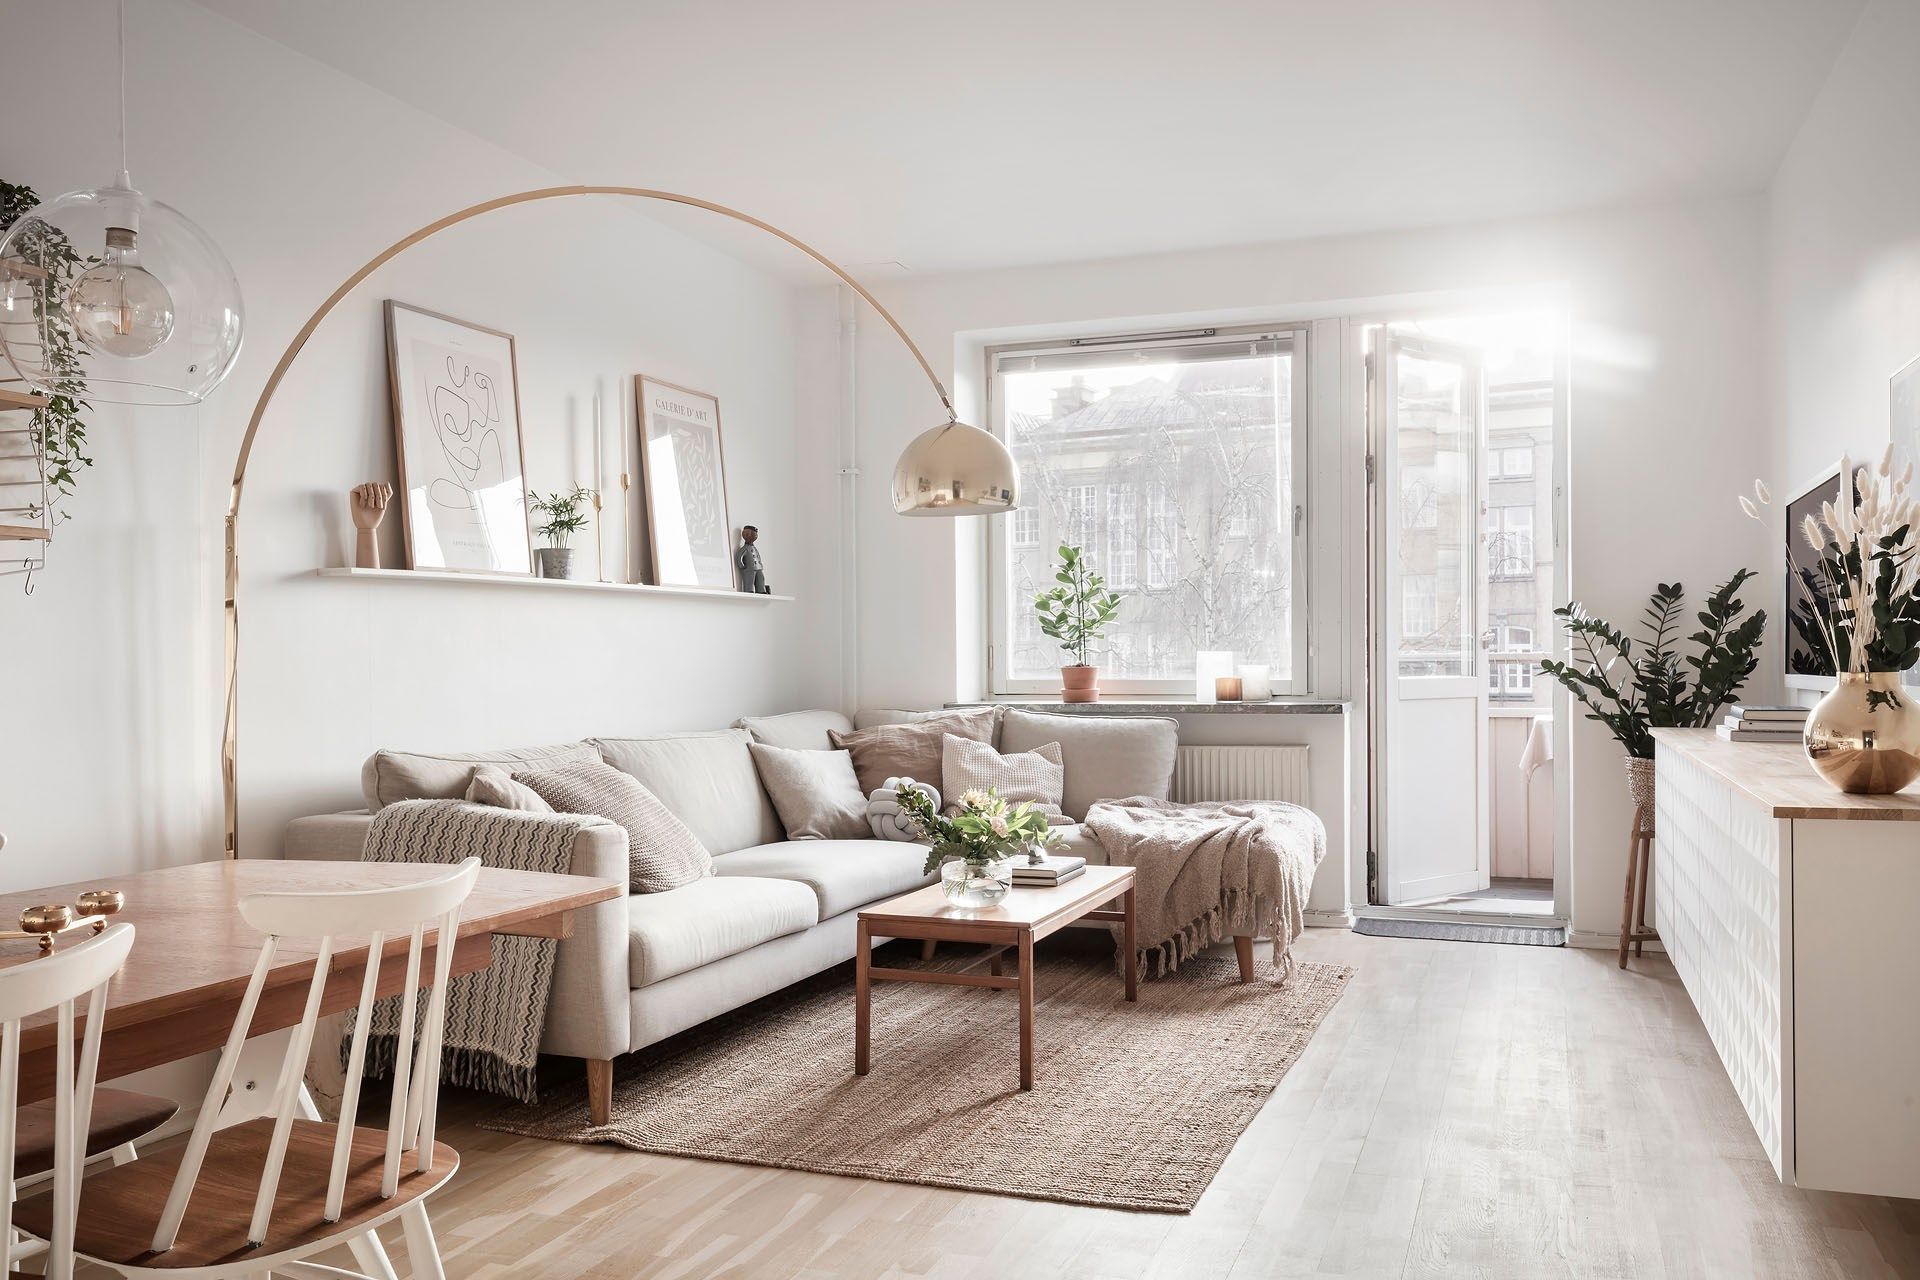 Sillón salón diseño moderno estilo nórdico de madera y tejido Modesto